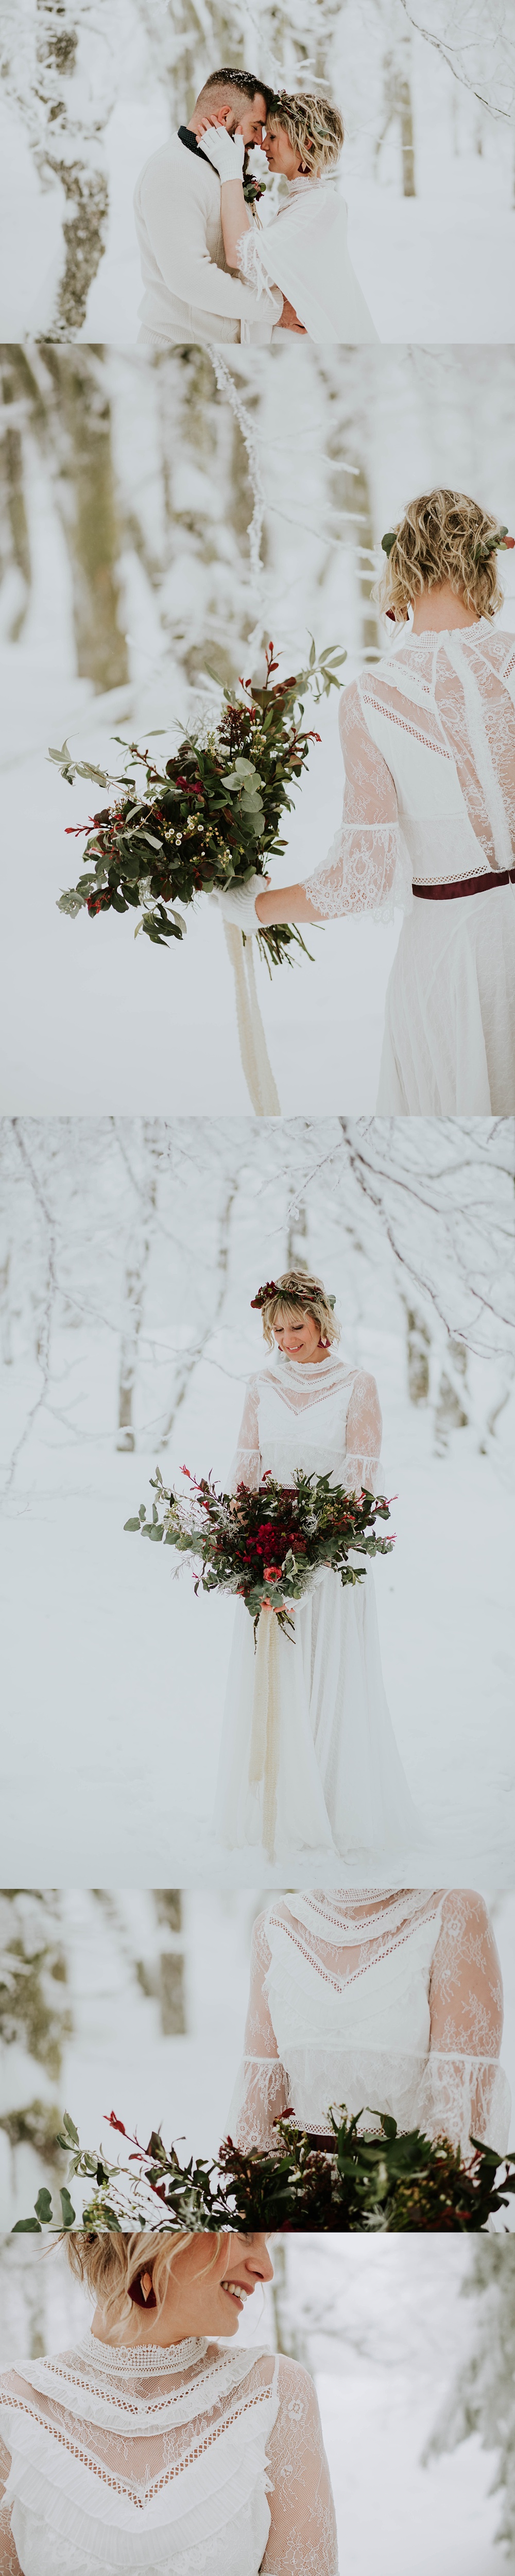 Mariage dans la neige Vosges